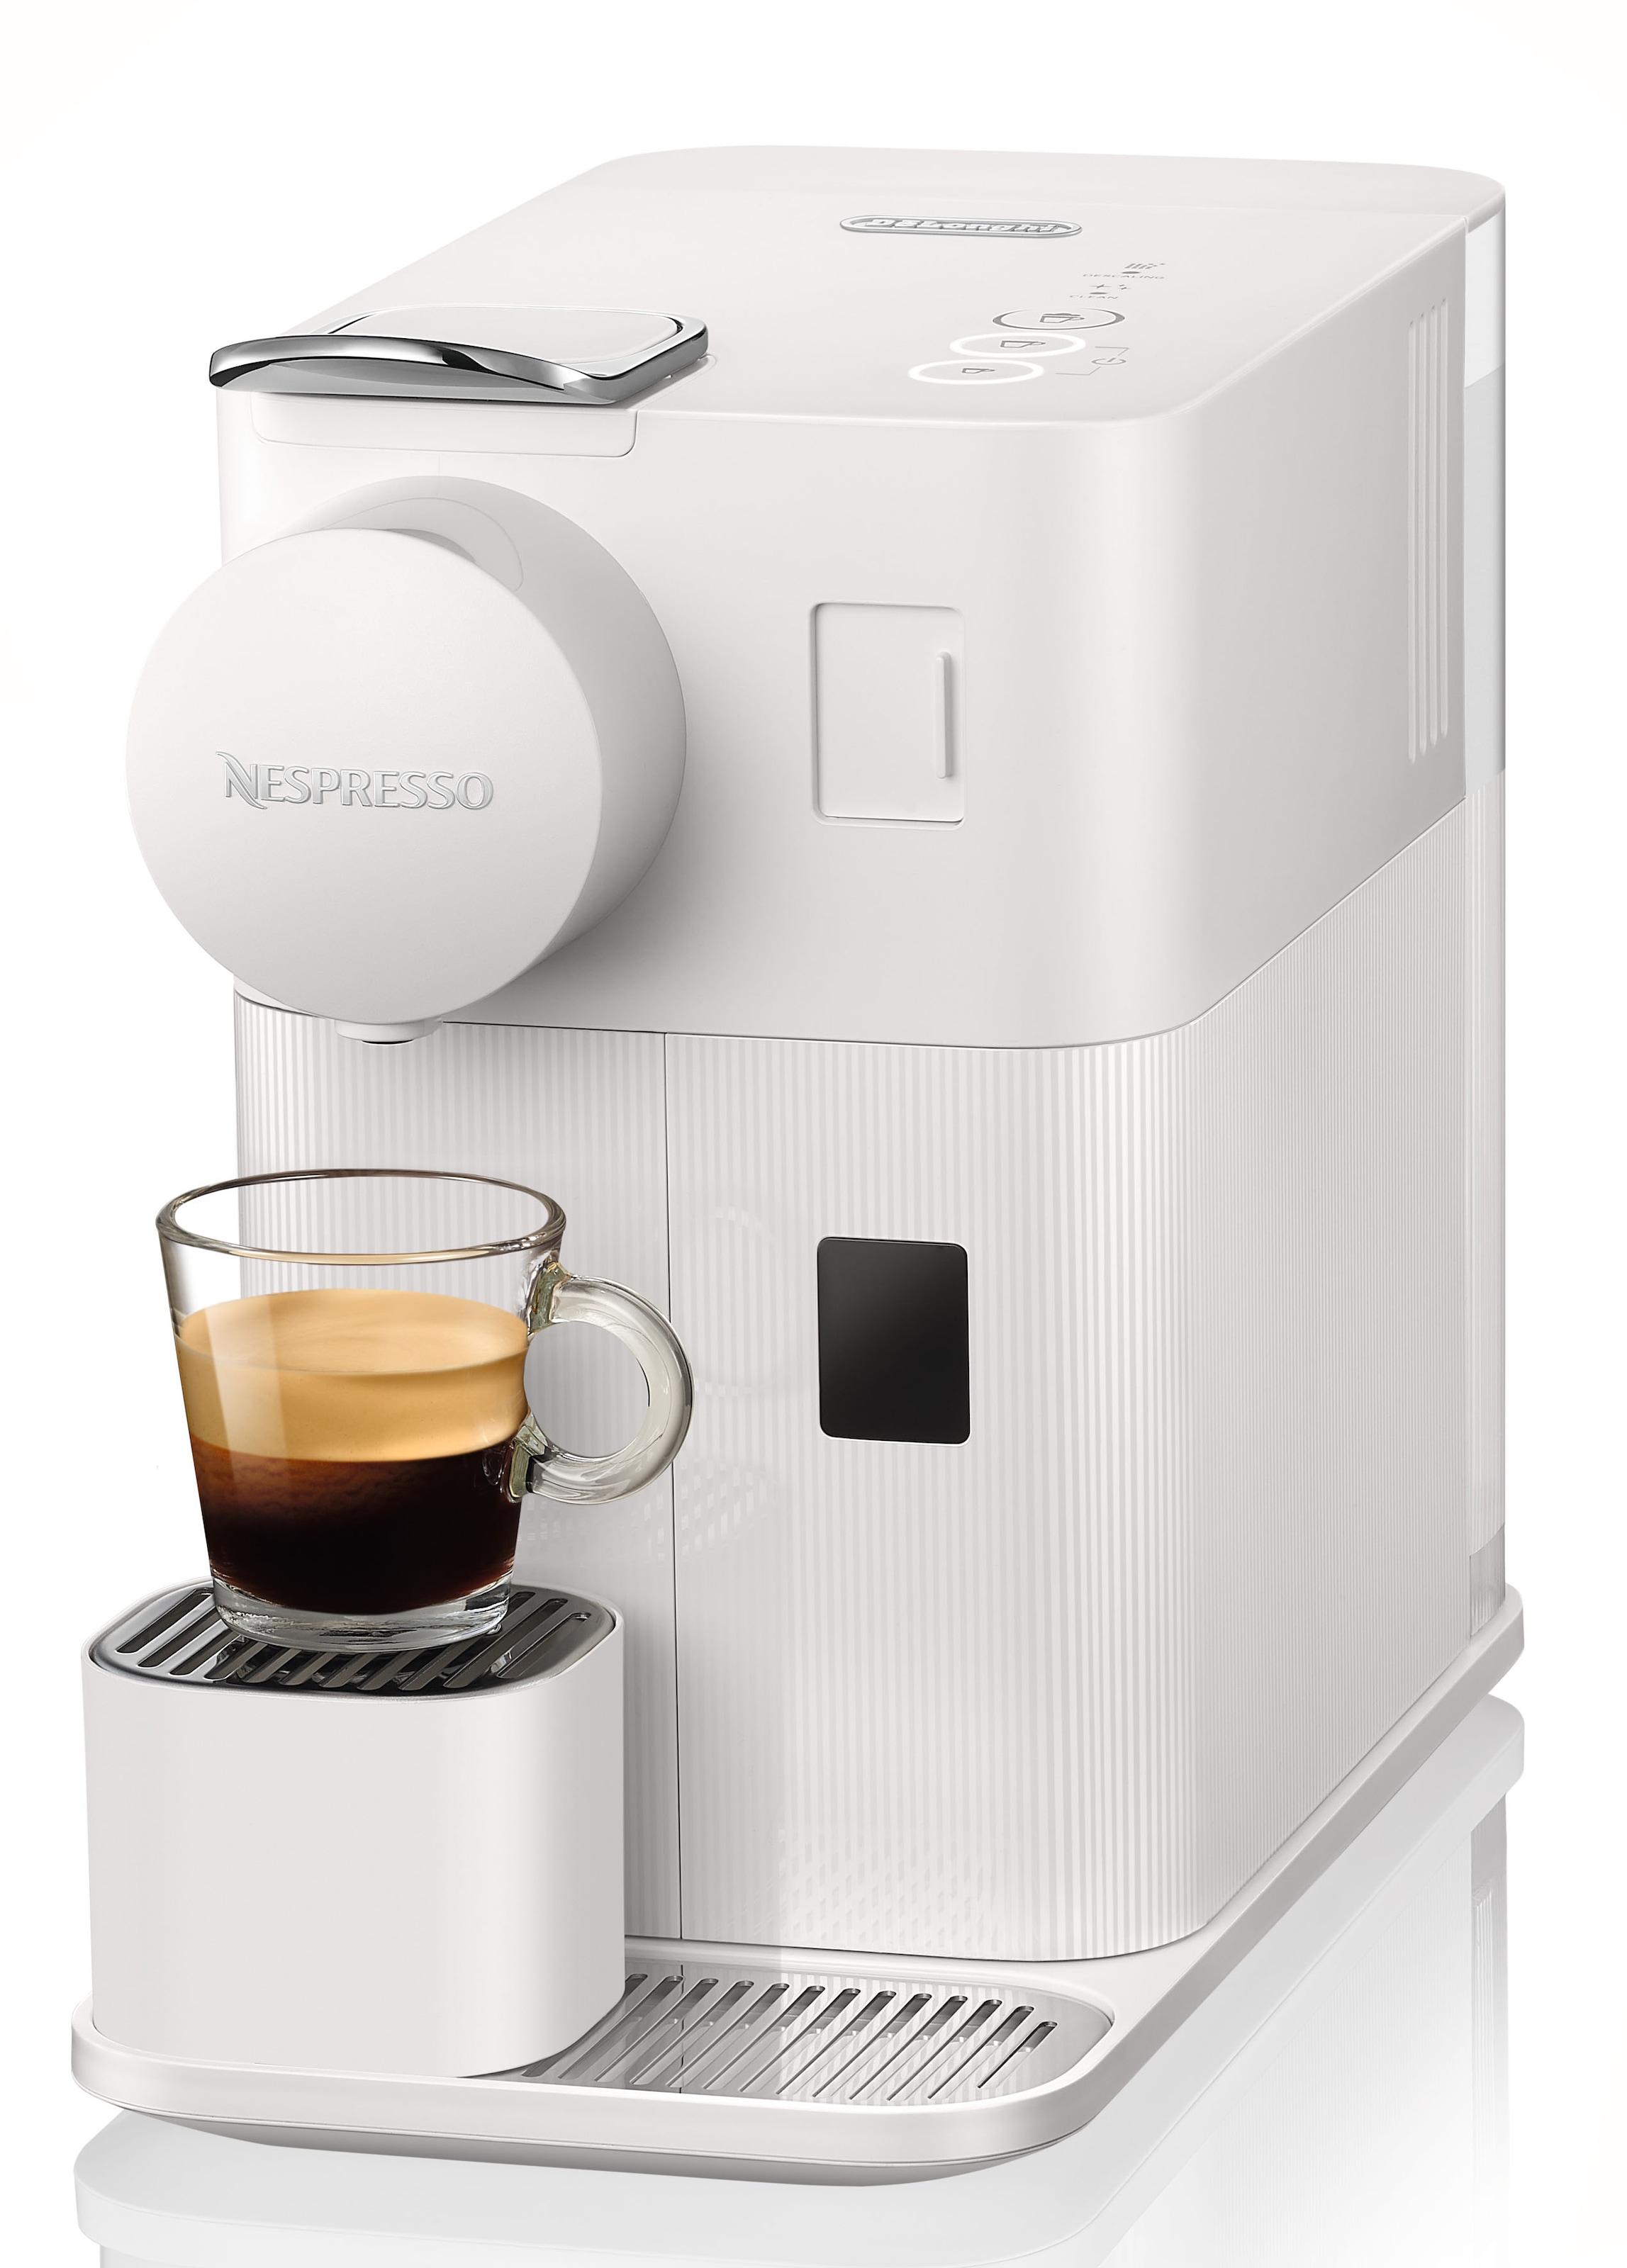 Nespresso Kapselmaschine von One »Lattissima mit inkl. Jahren 3 Willkommenspaket mit Garantie XXL White«, EN510.W Kapseln 7 DeLonghi